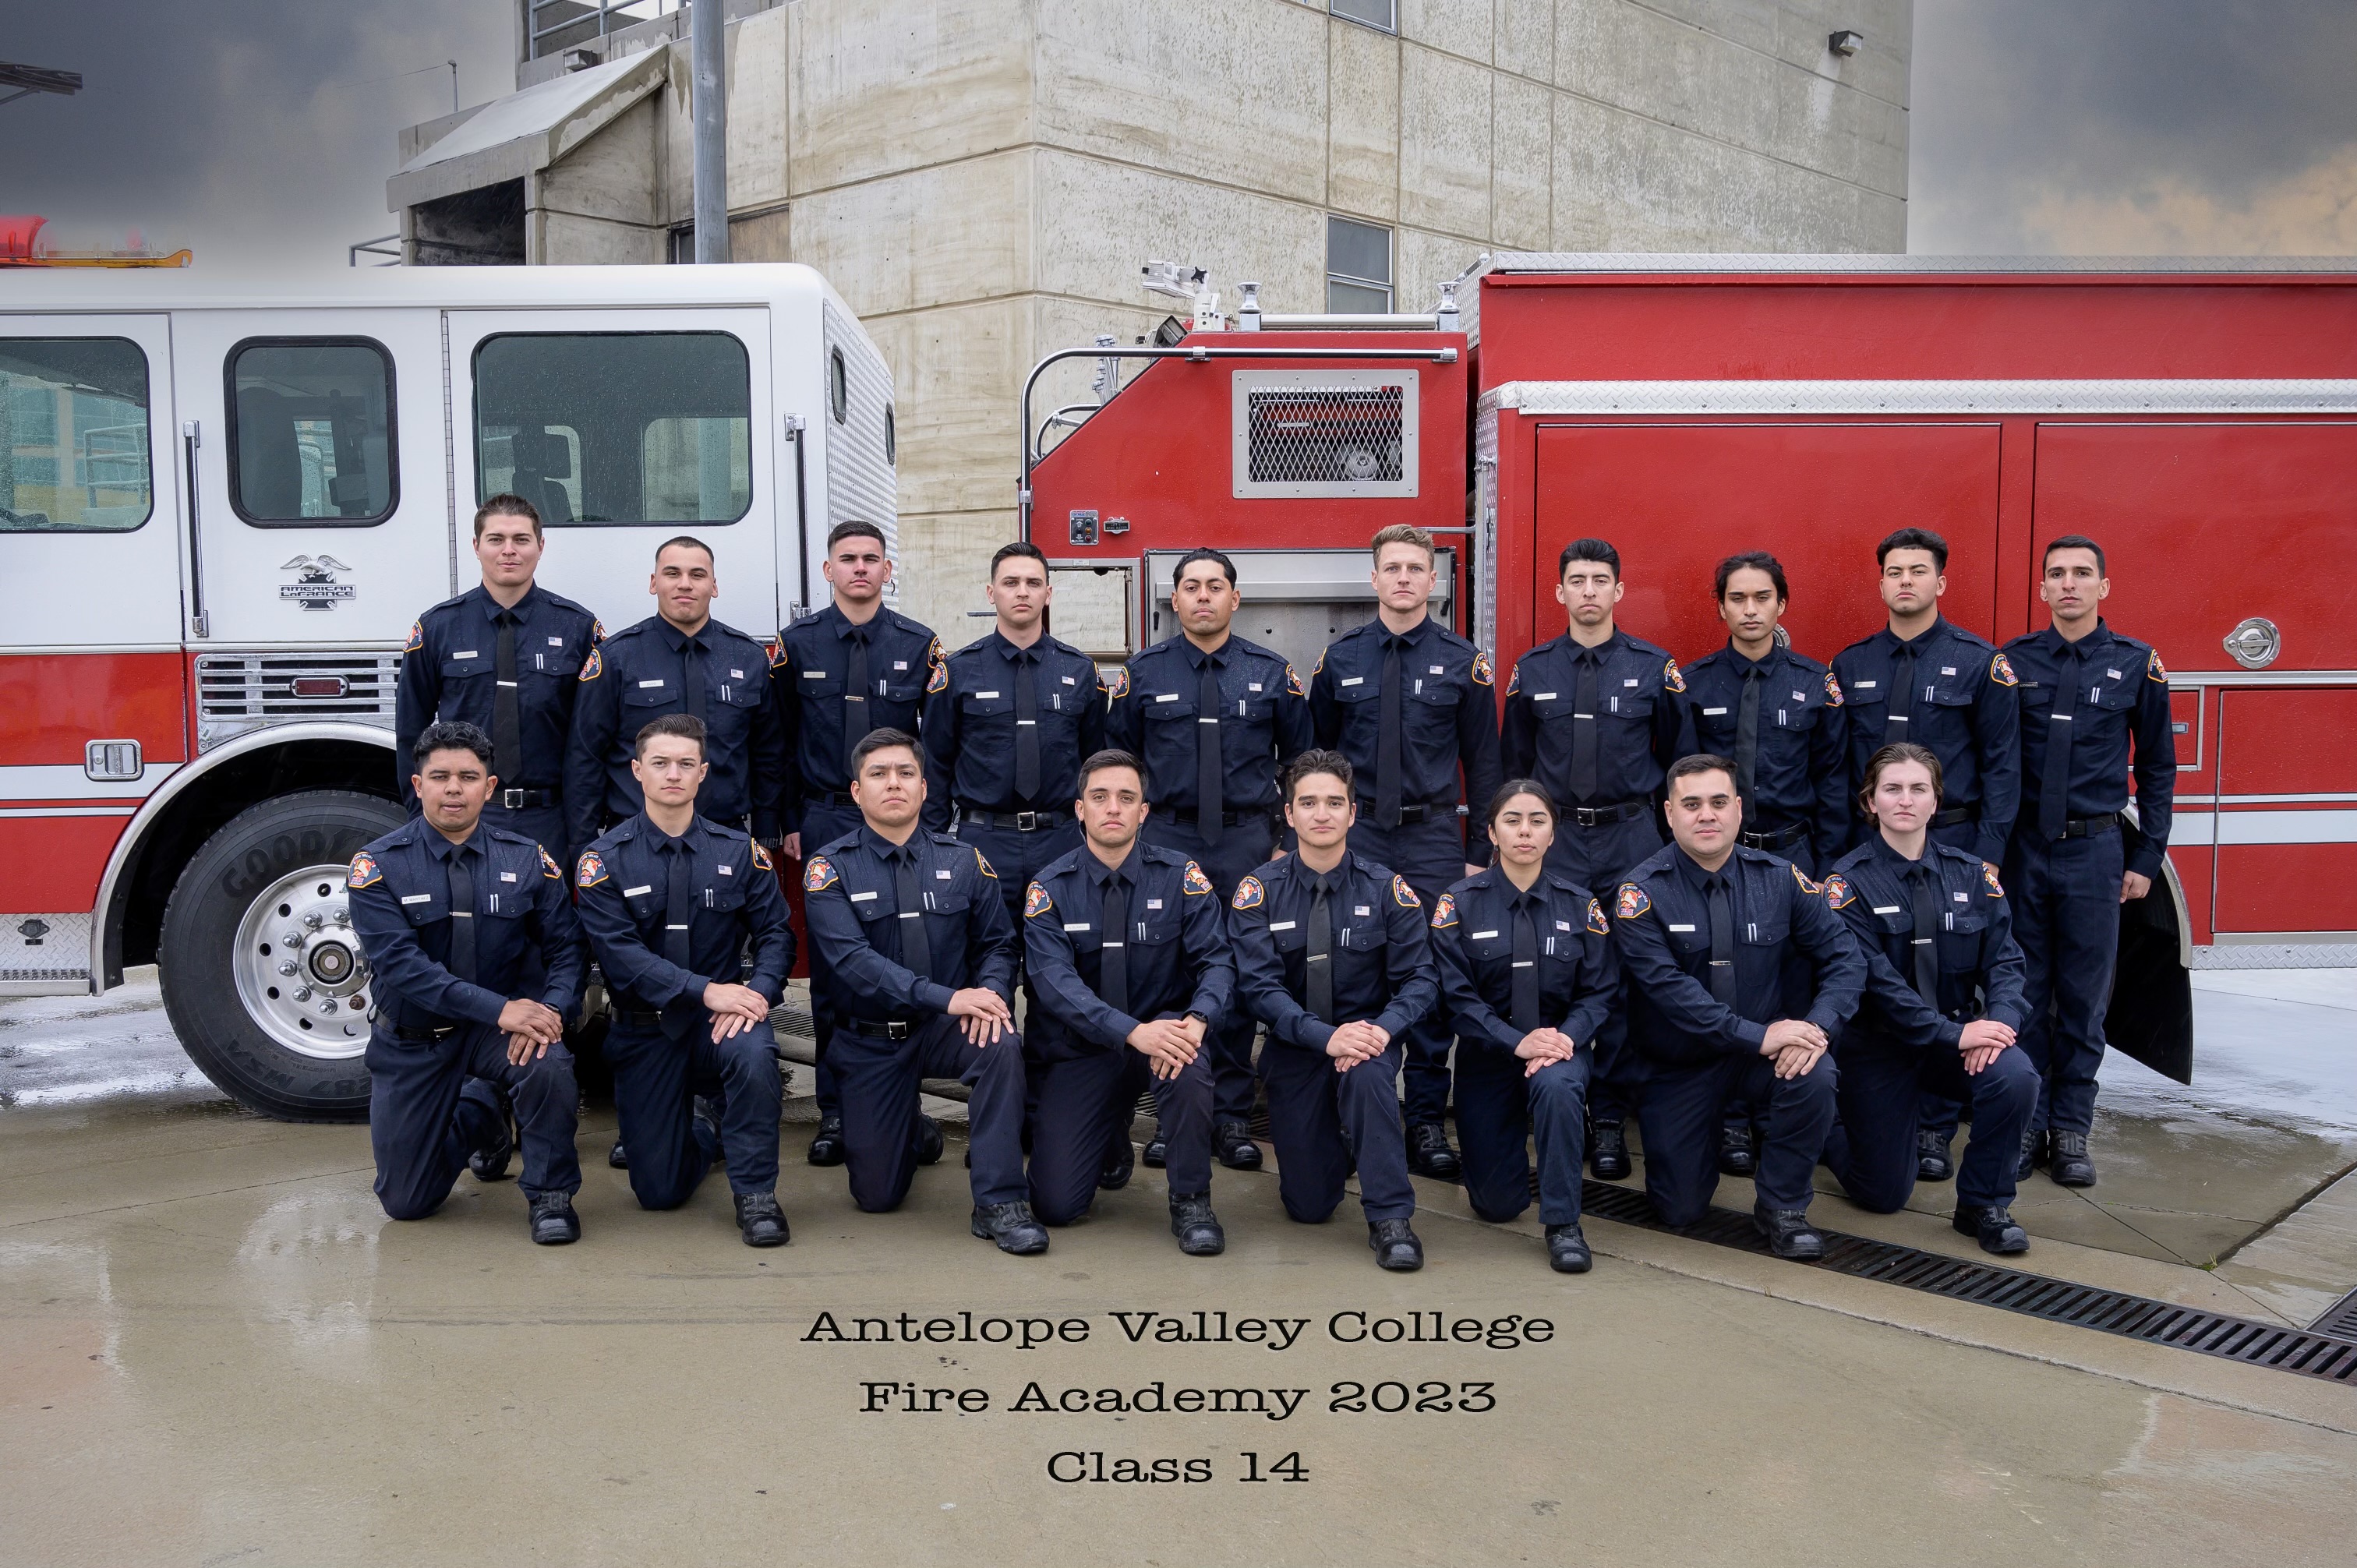 Fire Academy Graduation class